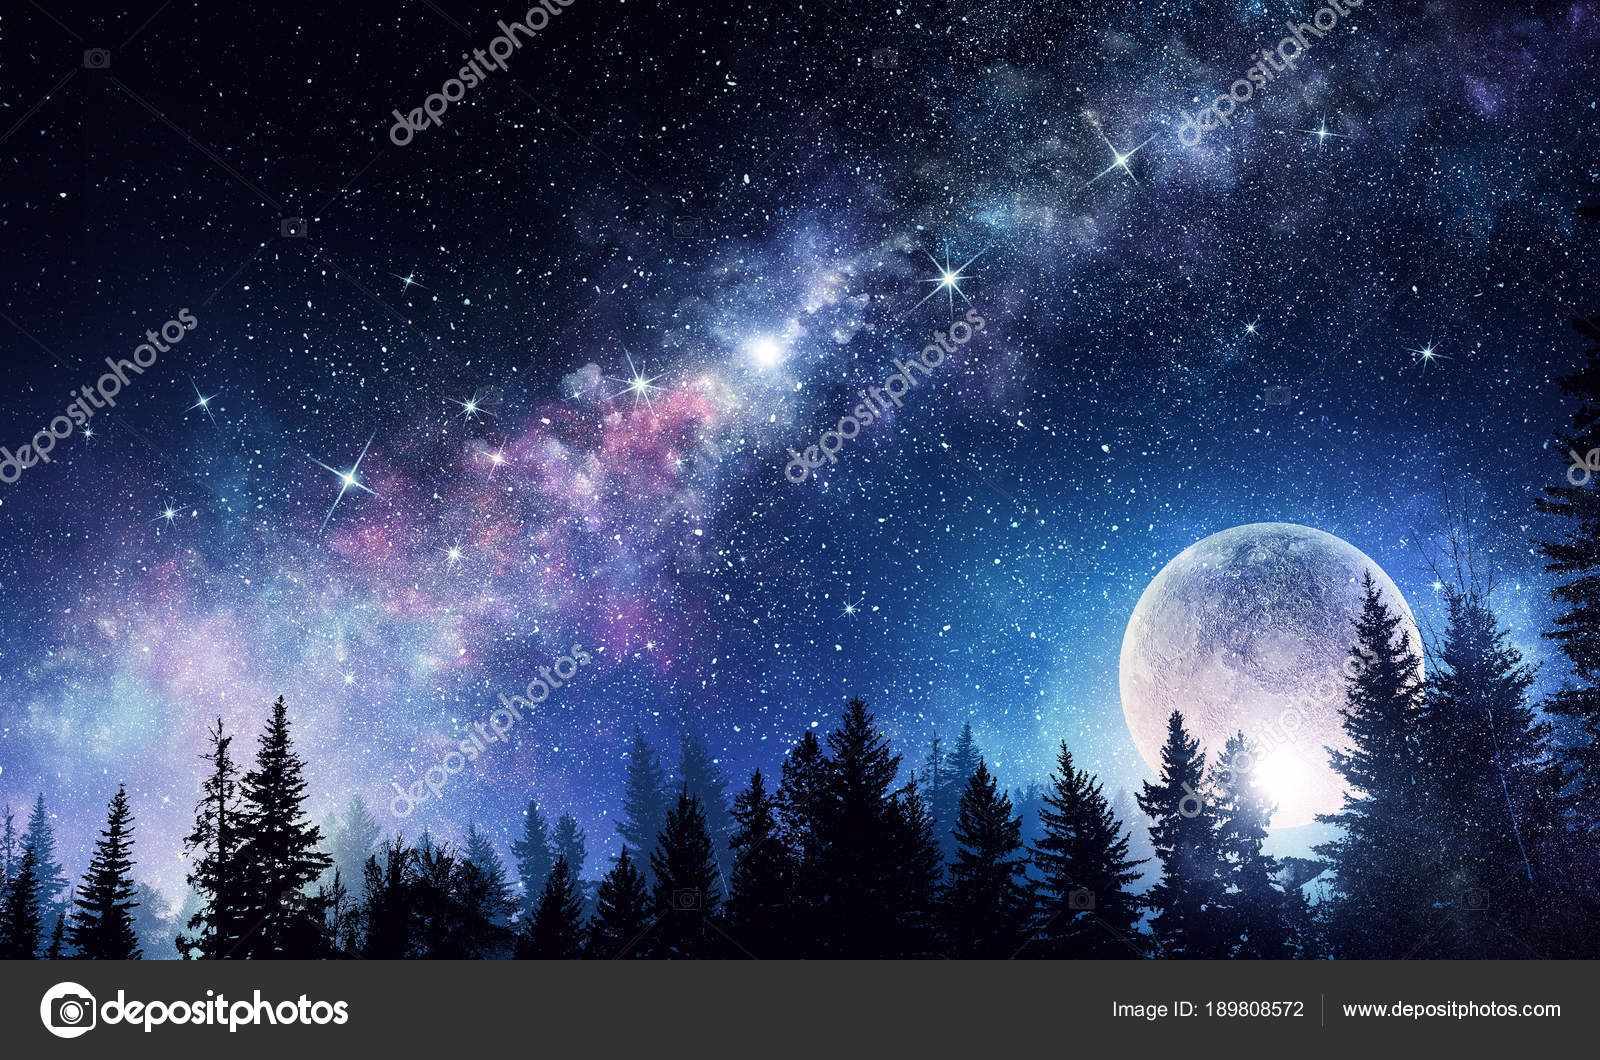 Красивые фотографии ночное небо с луной 02